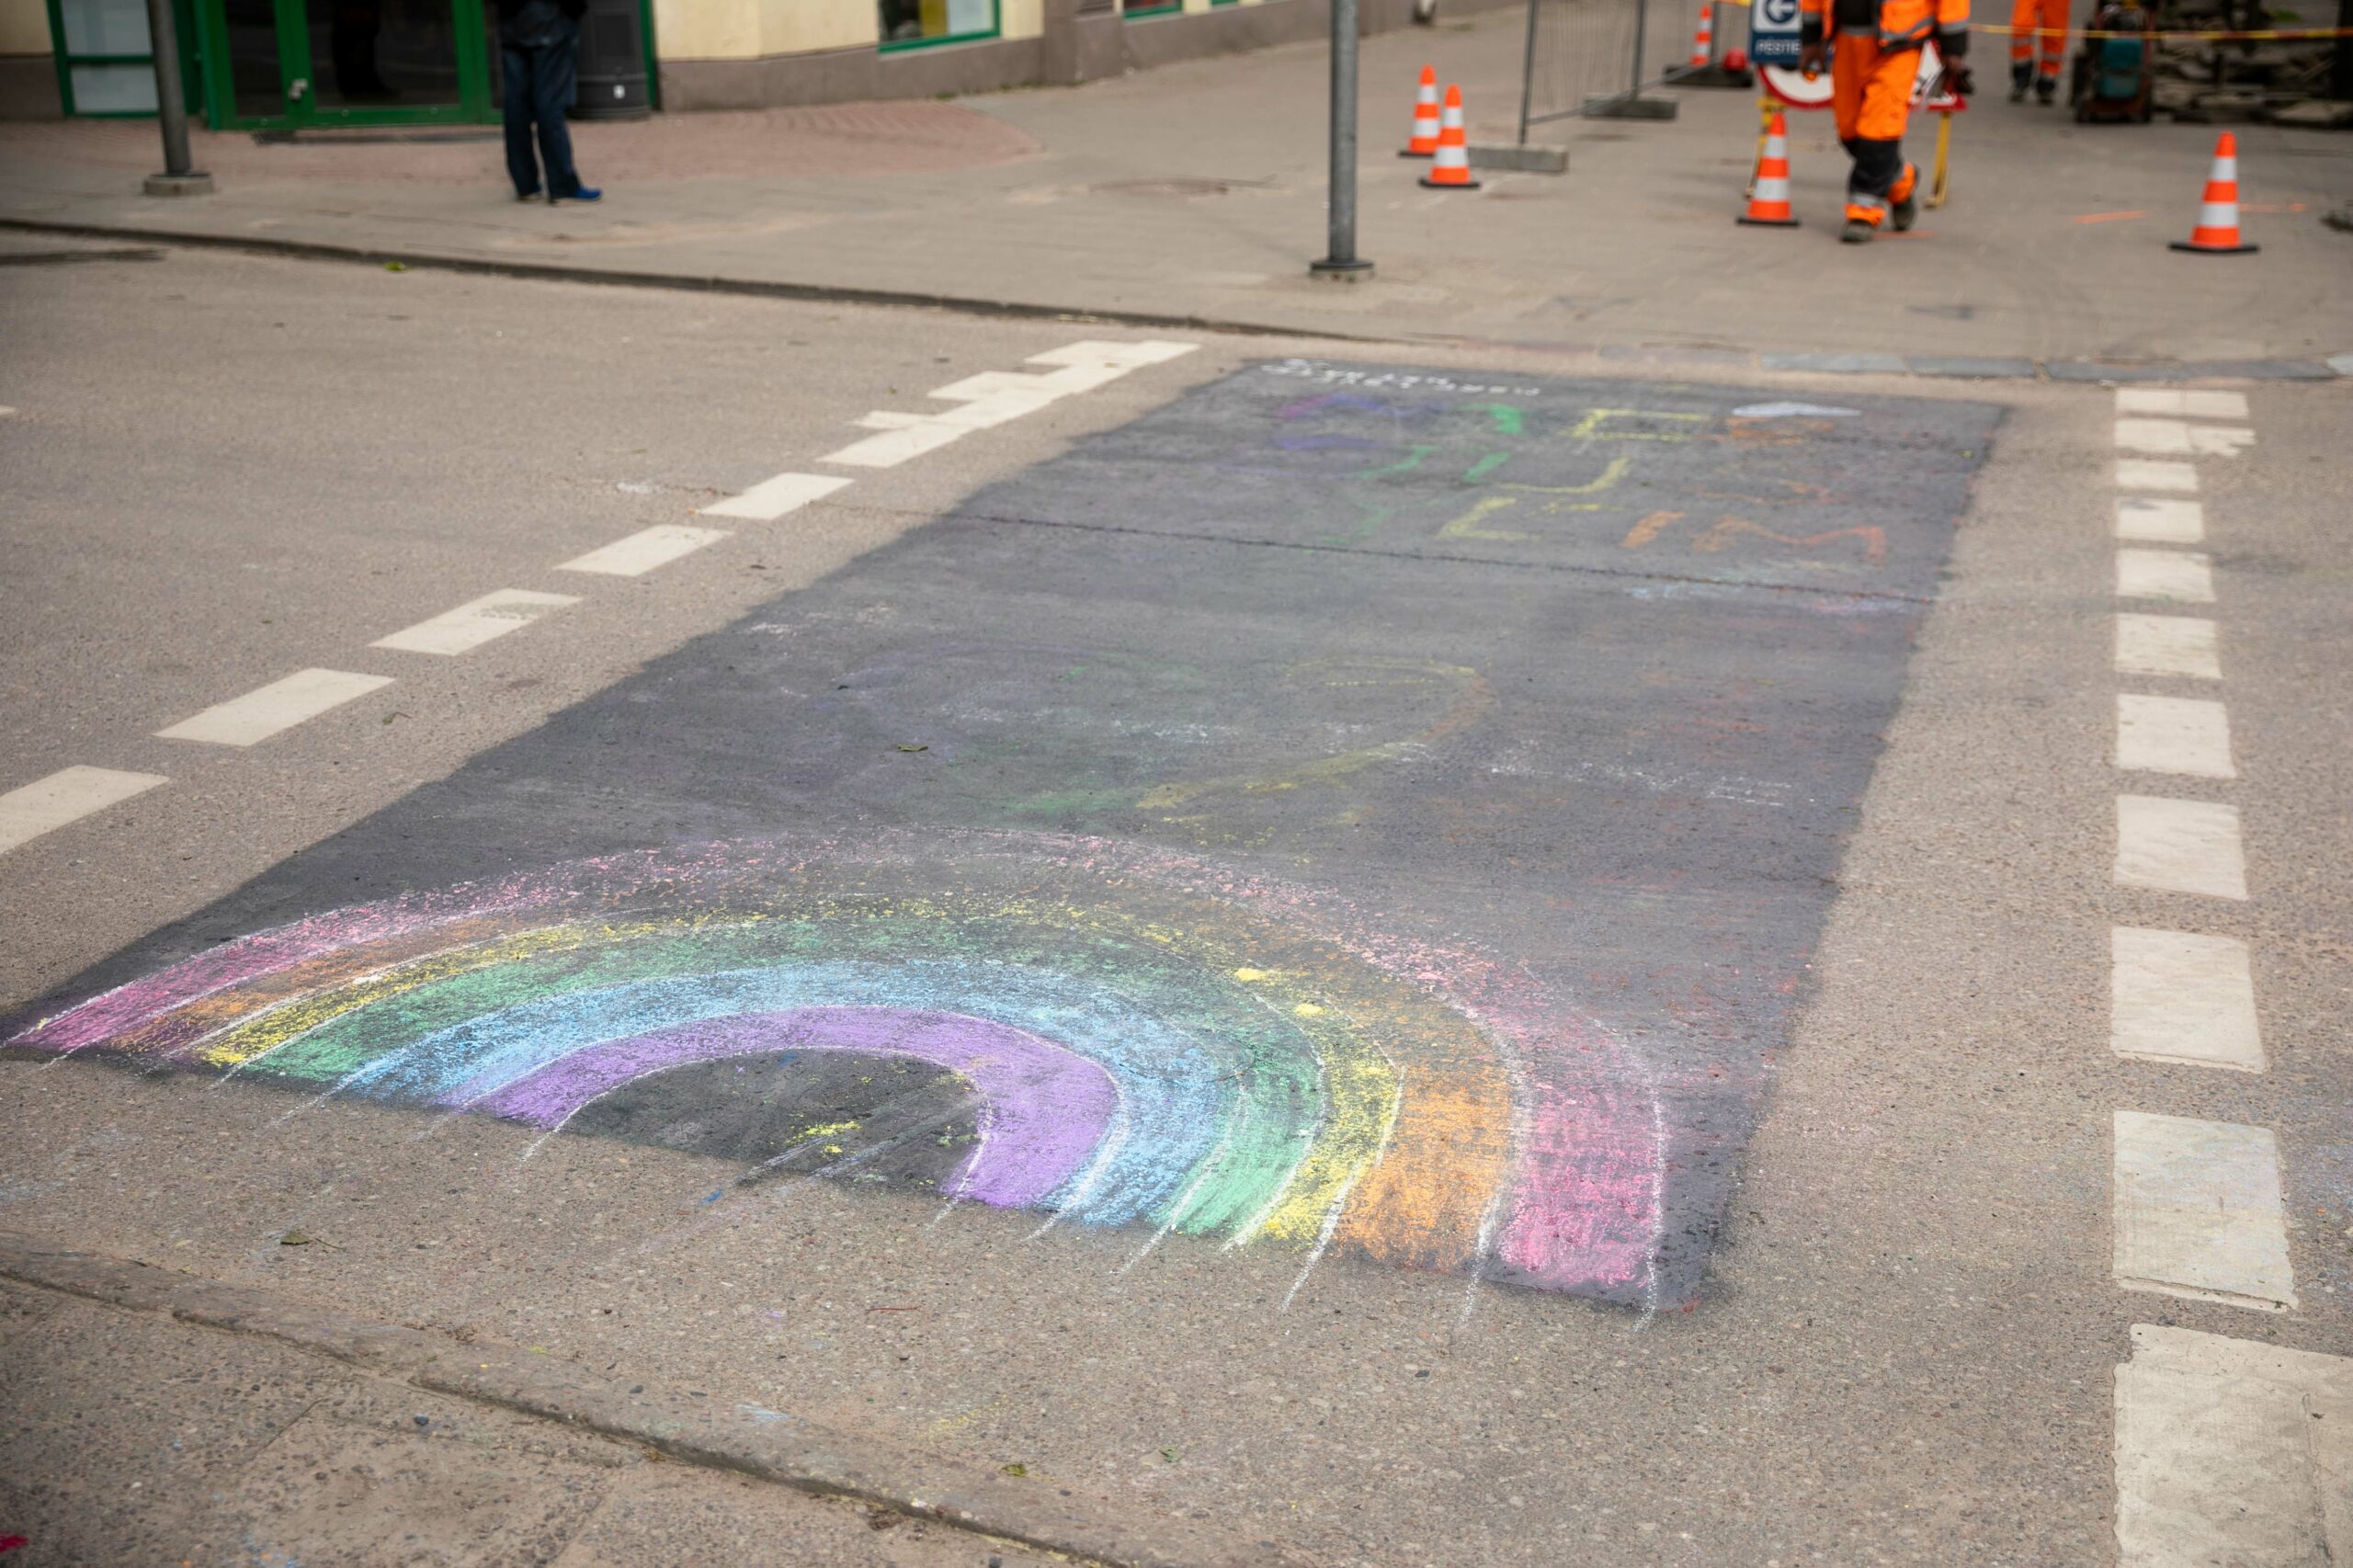 2021-06-01, Painted rainbow crossing. Vilnius. in 2021 June 01